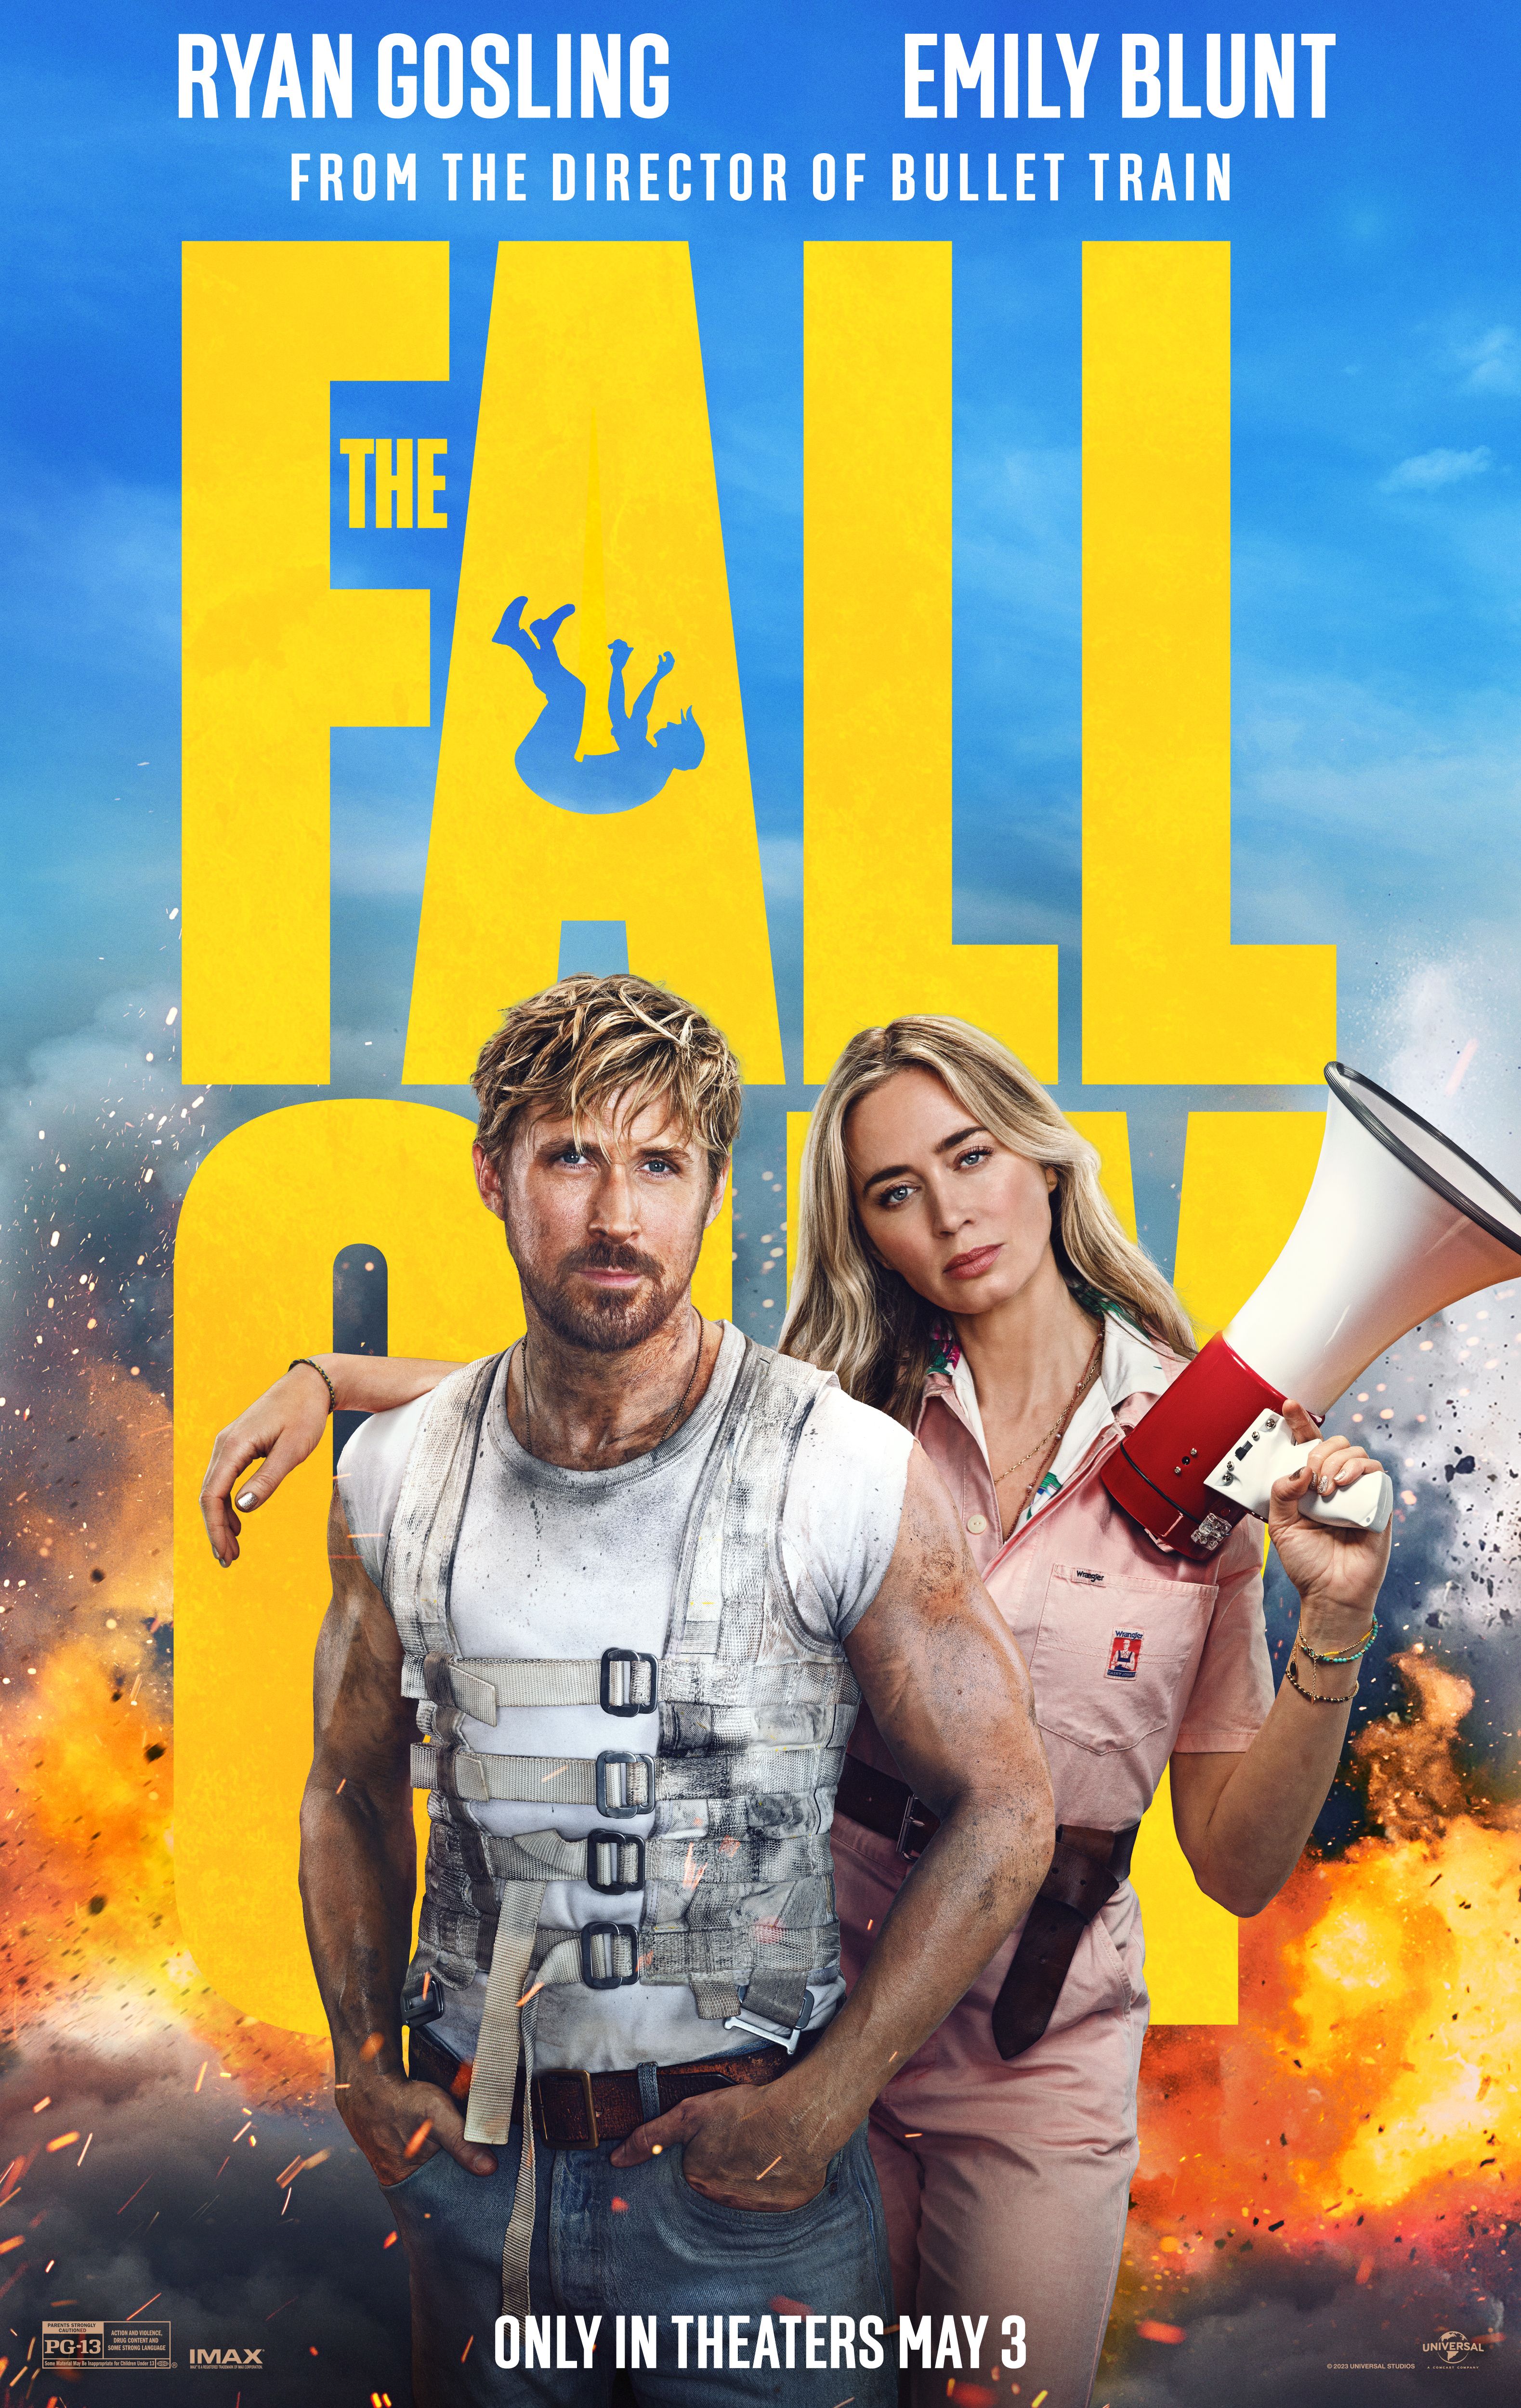 El póster de la película Fall Guy muestra a Emily Blunt sosteniendo un megáfono junto a Ryan Gosling frente a una explosión.